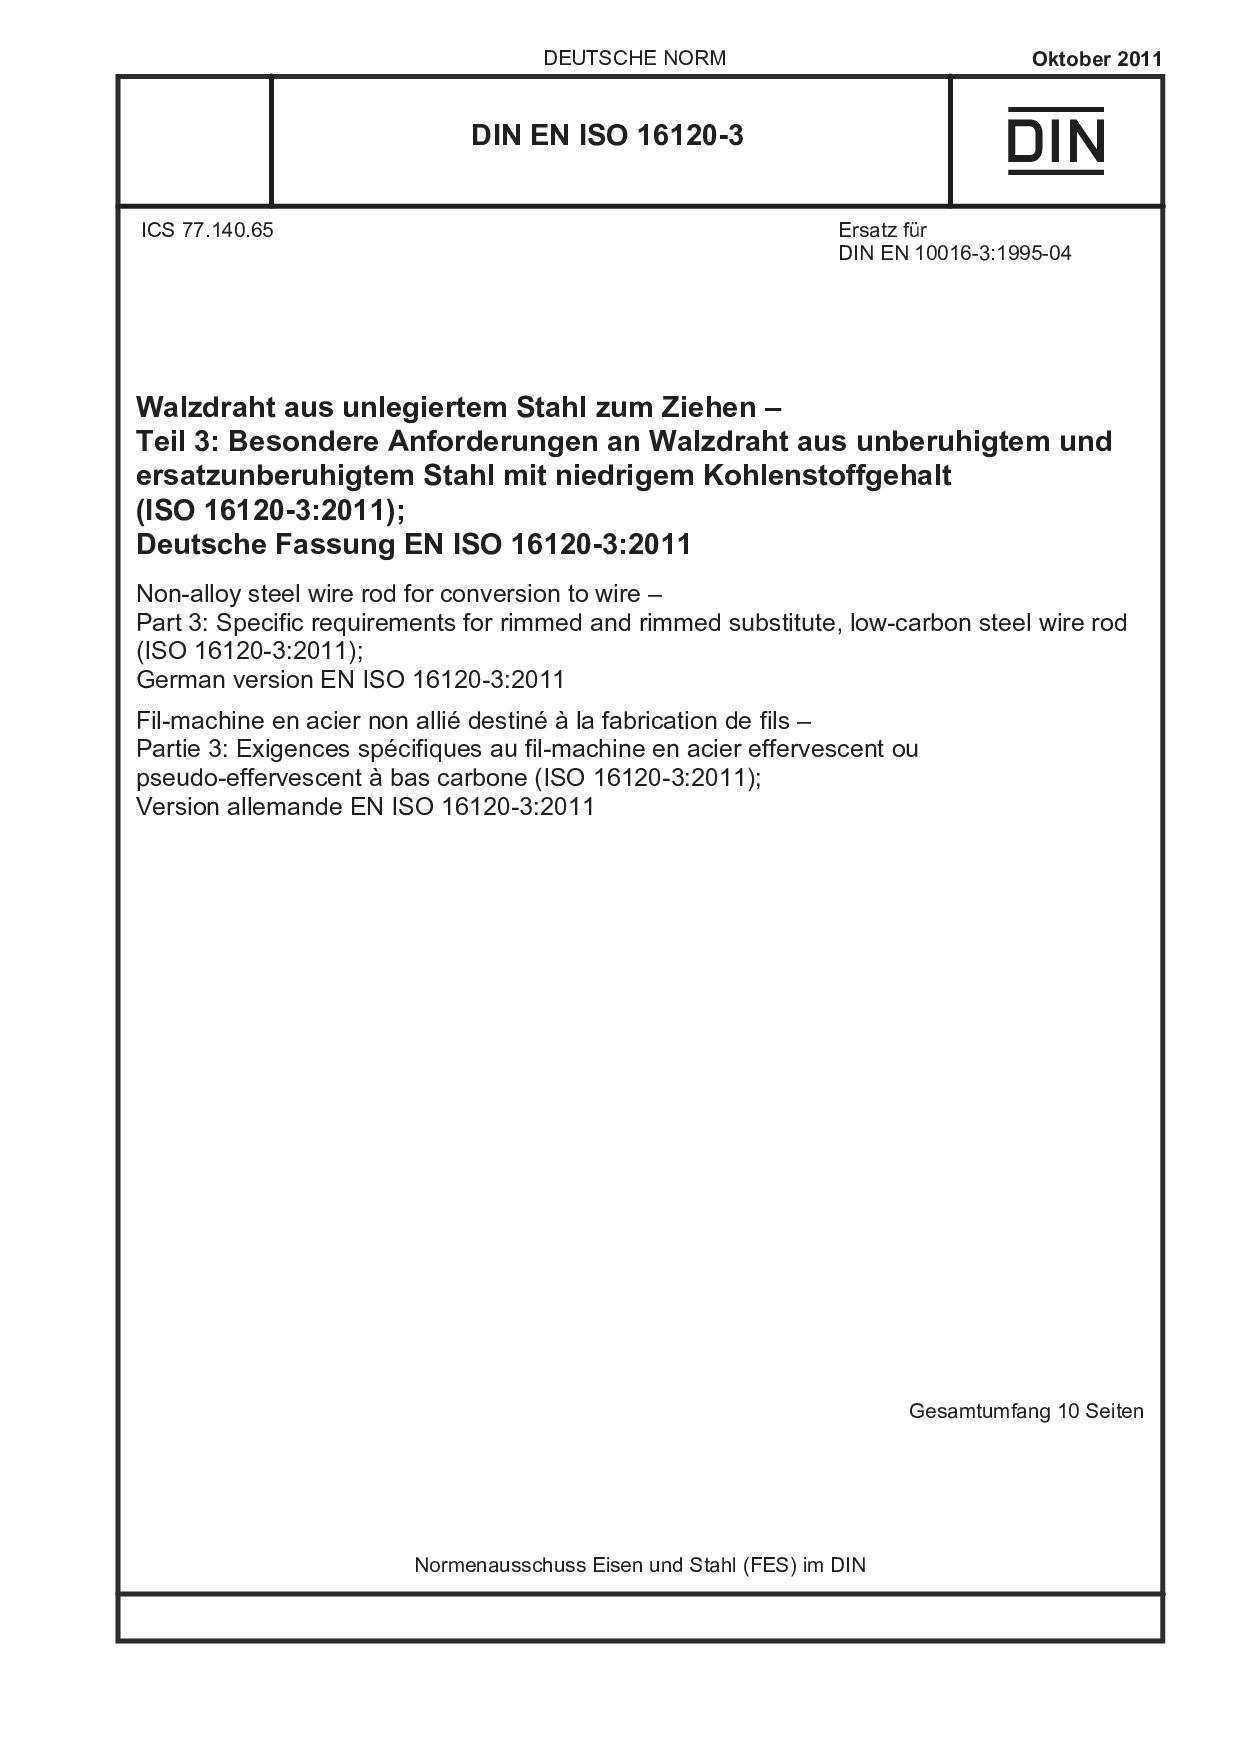 DIN EN ISO 16120-3:2011封面图